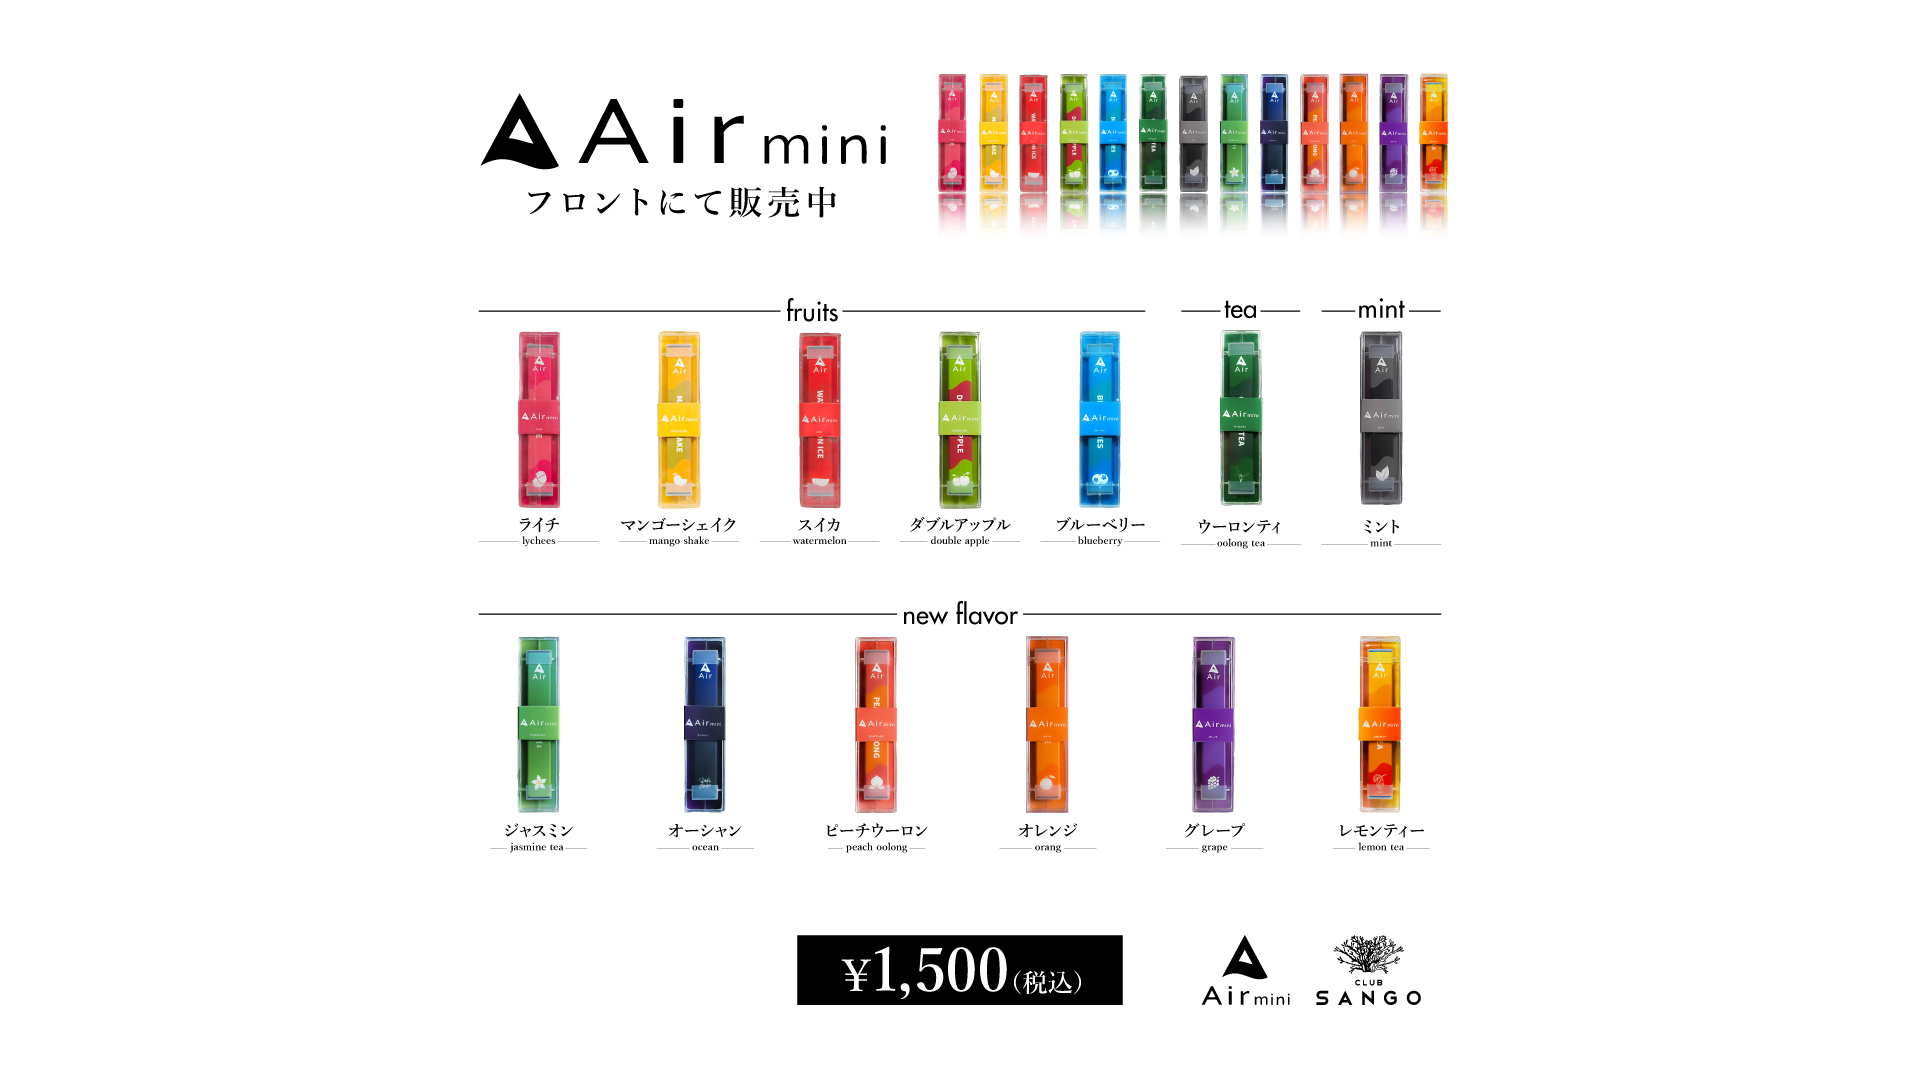 Air mini 全13種類発売中